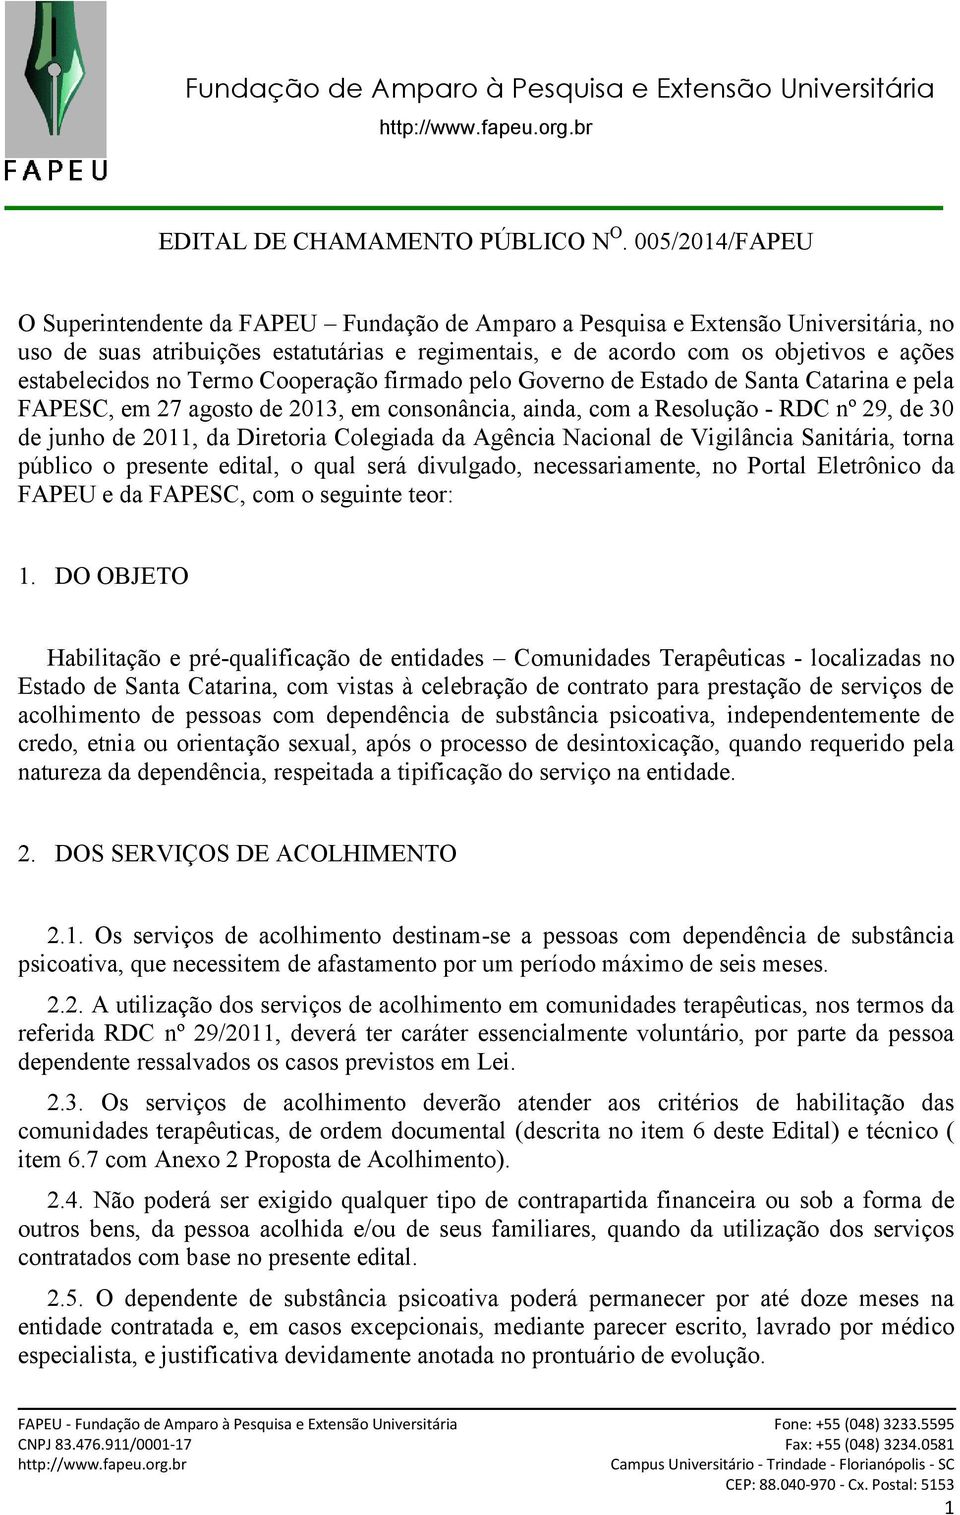 estabelecidos no Termo Cooperação firmado pelo Governo de Estado de Santa Catarina e pela FAPESC, em 27 agosto de 2013, em consonância, ainda, com a Resolução - RDC nº 29, de 30 de junho de 2011, da